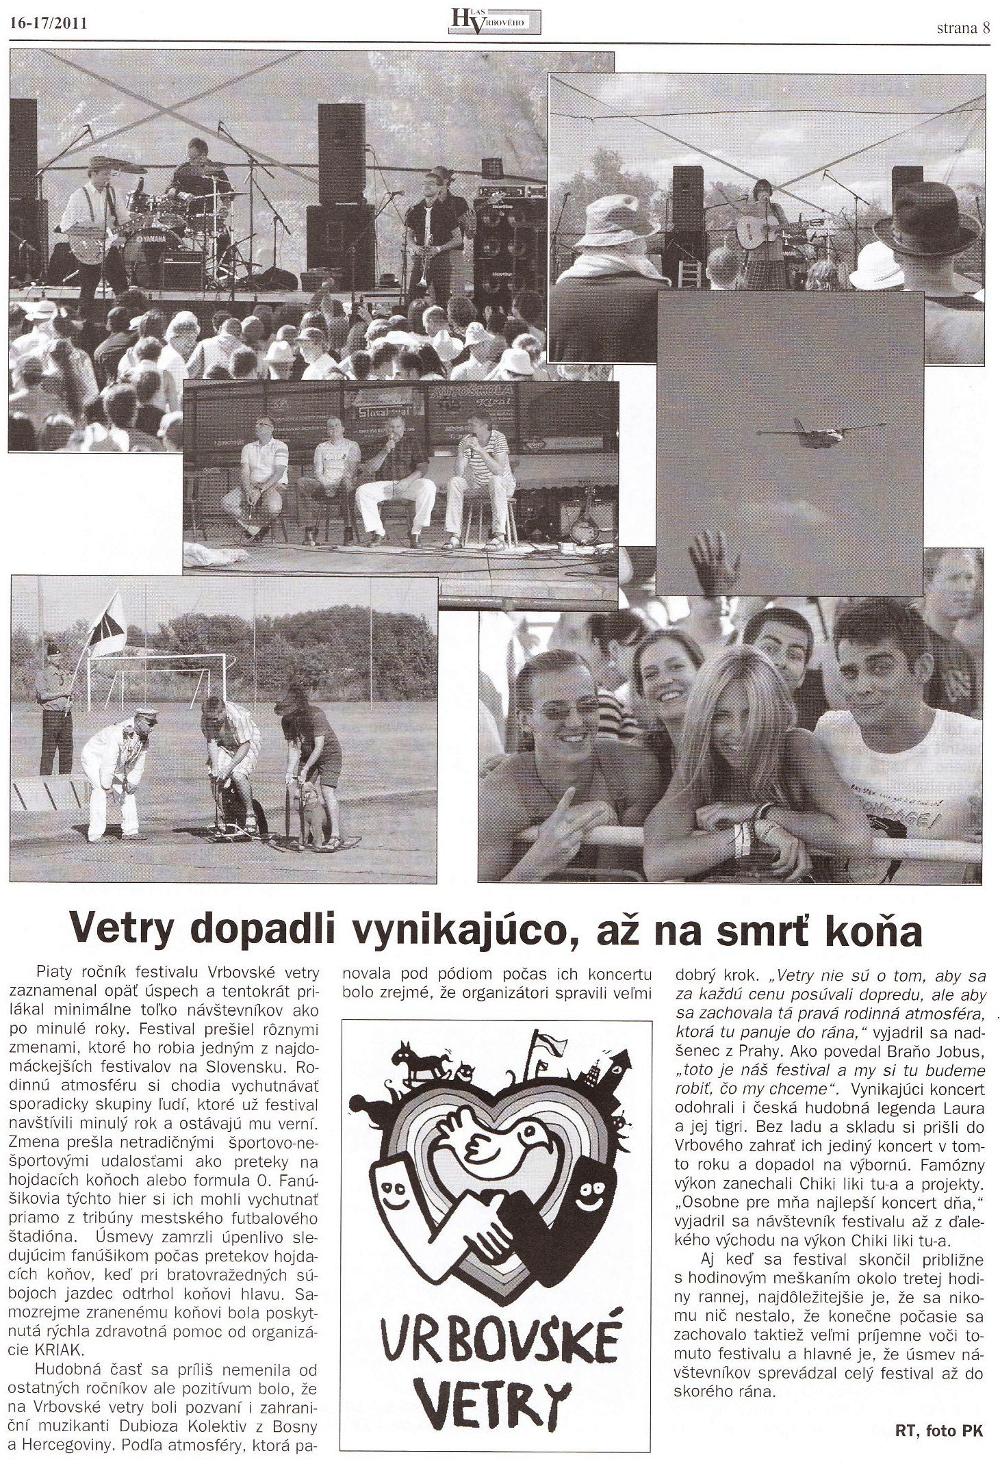 Hlas Vrbového 16-17/2011, strana 8